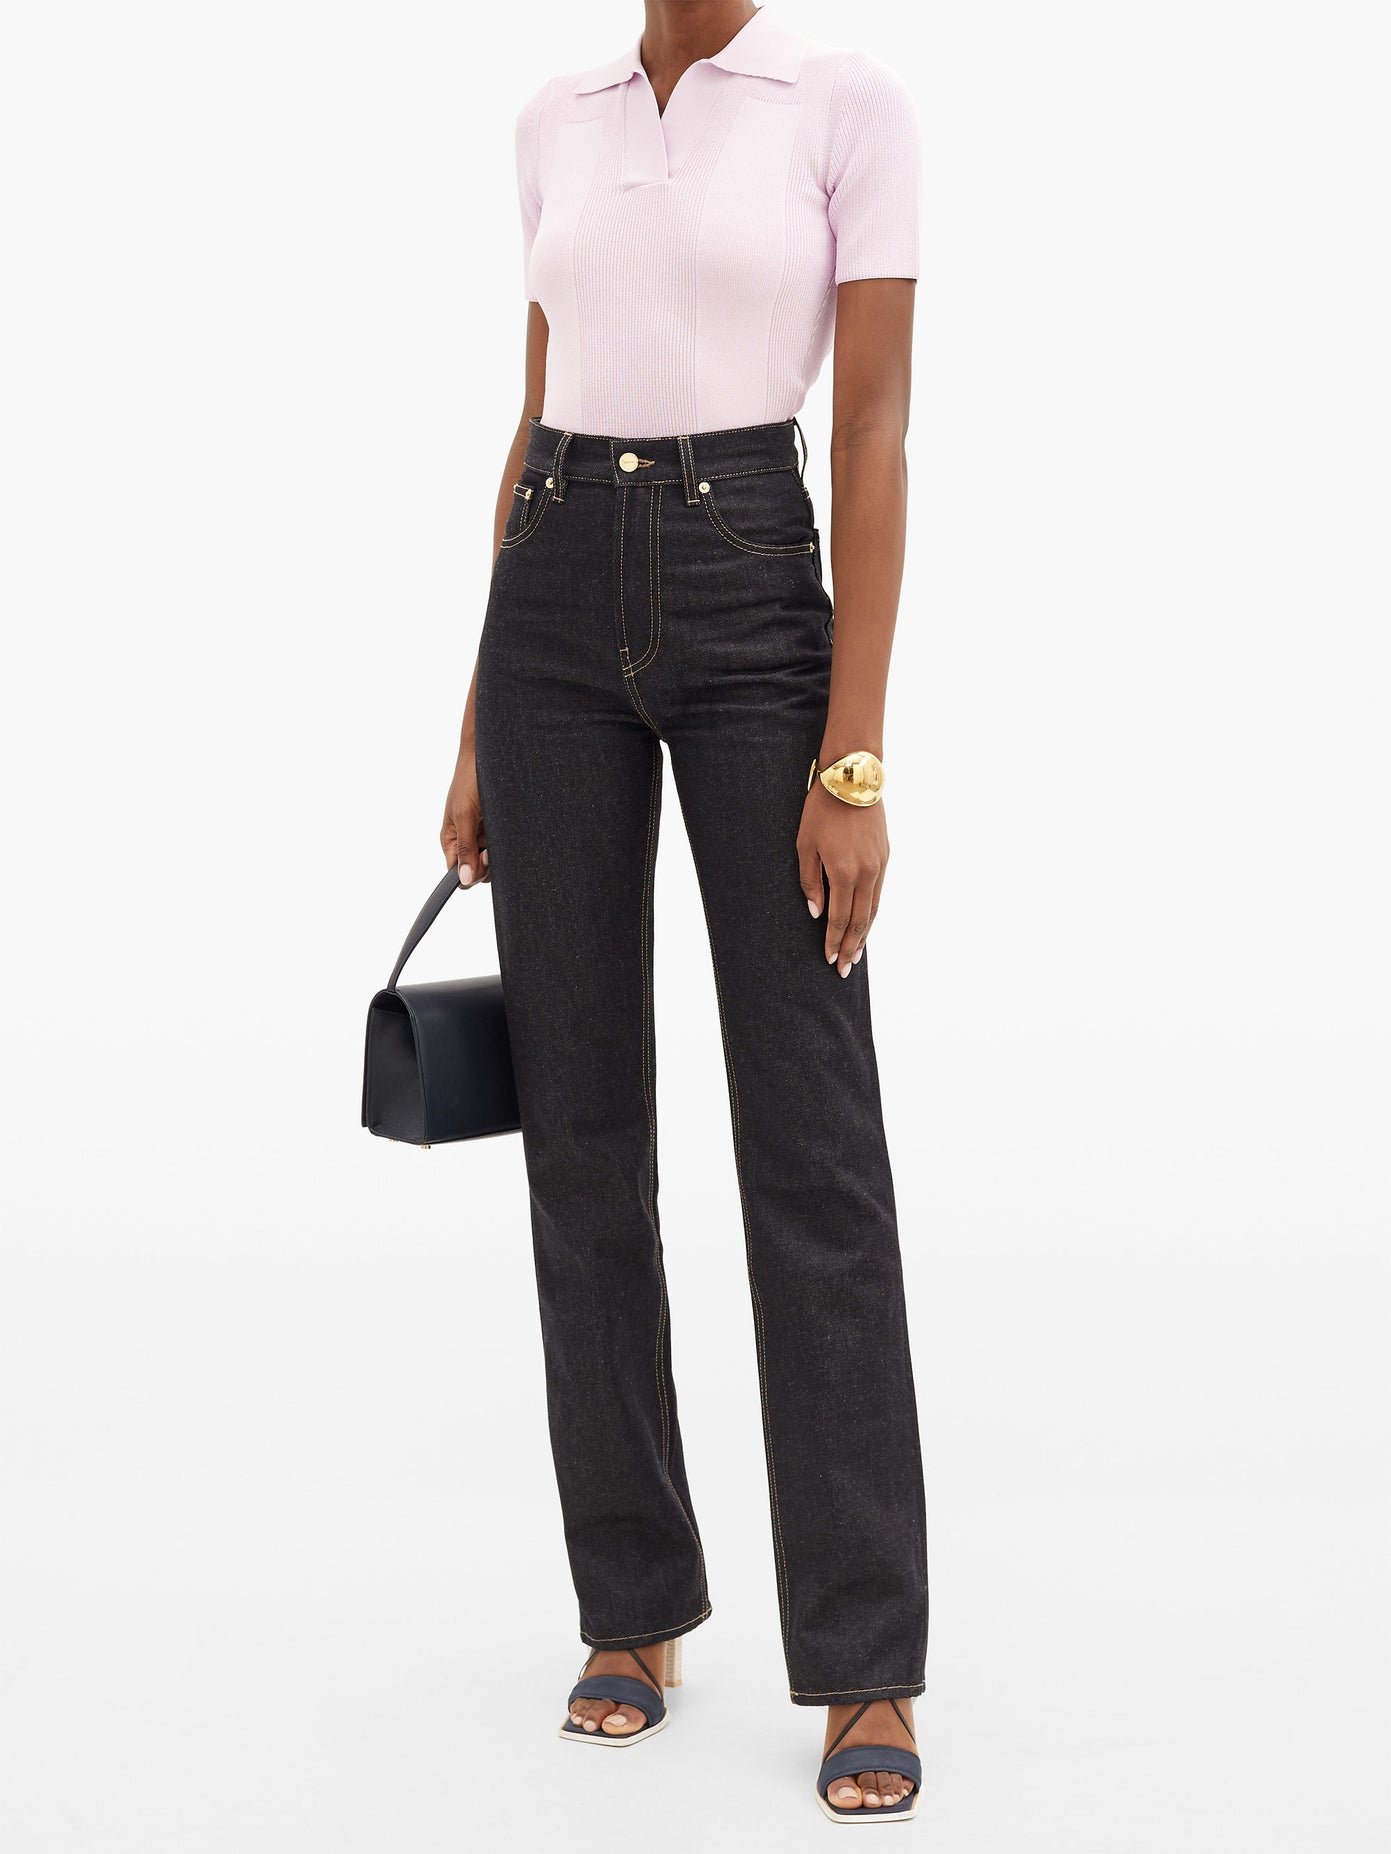 Где купить: идеальные чёрные джинсы на осень 